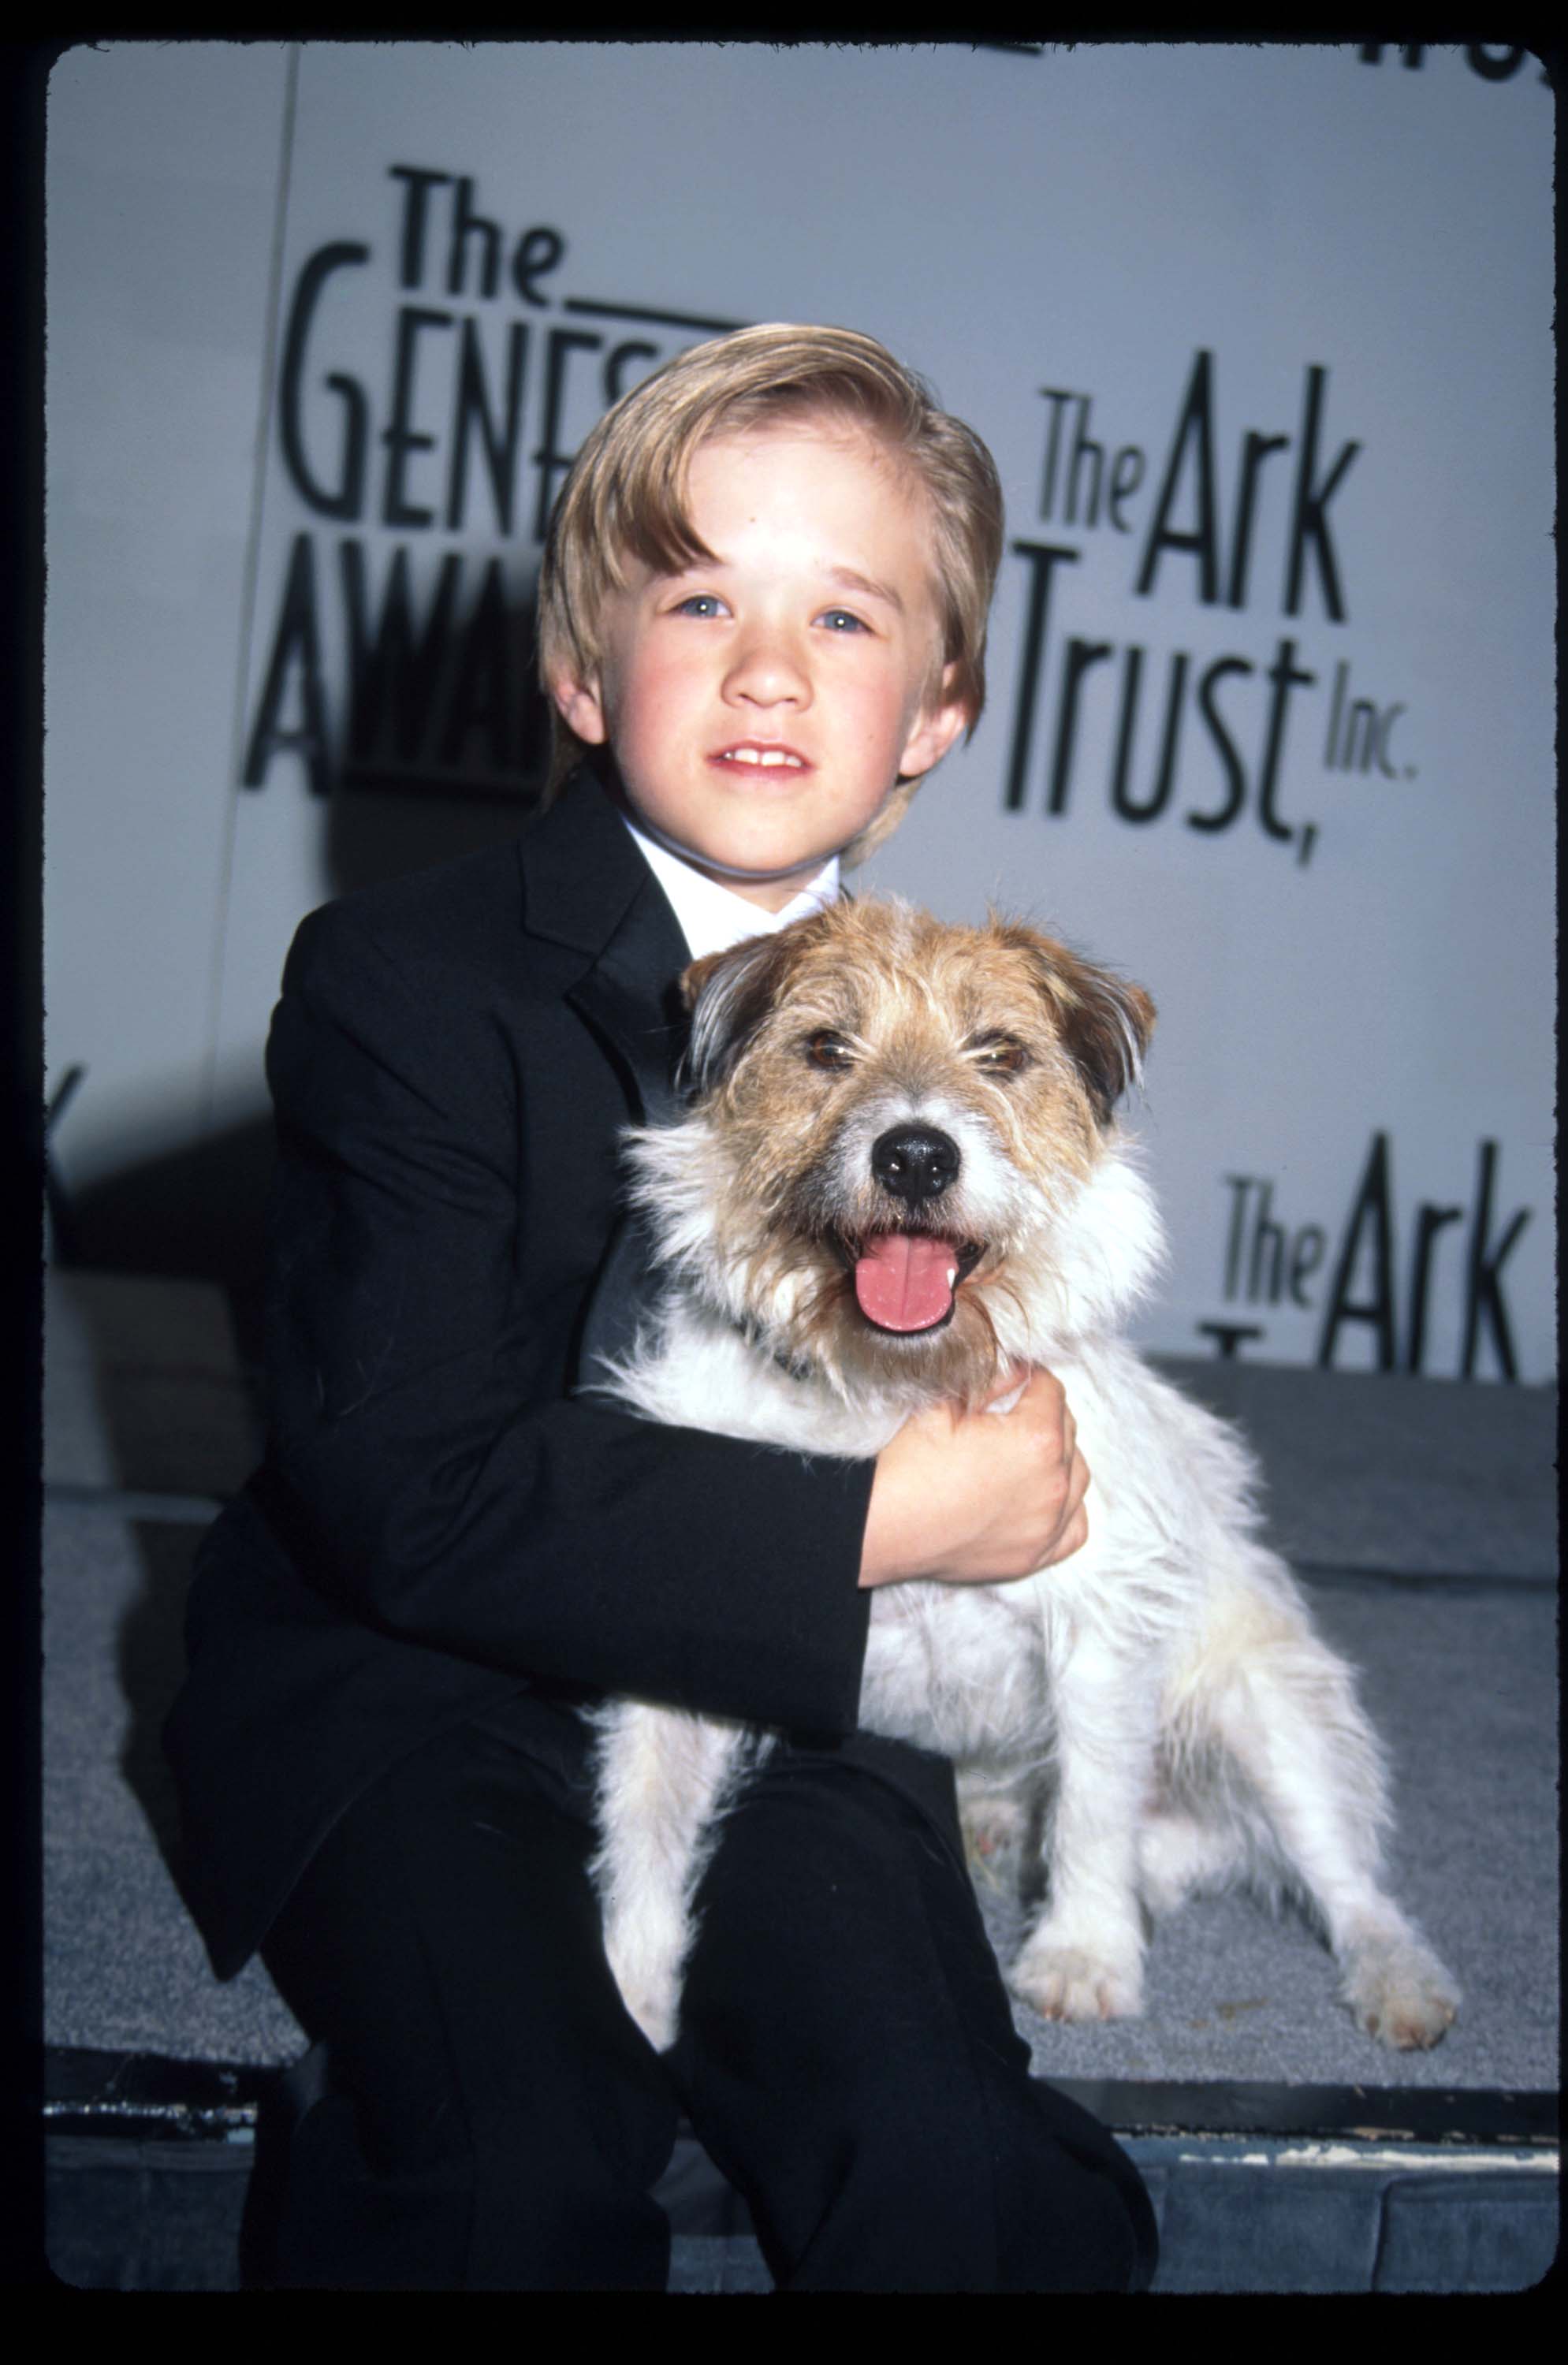 Haley Osment tient le chien Sparky lors de la remise des prix Genesis le 5 avril 1997 à Los Angeles, en Californie. | Source : Getty Images